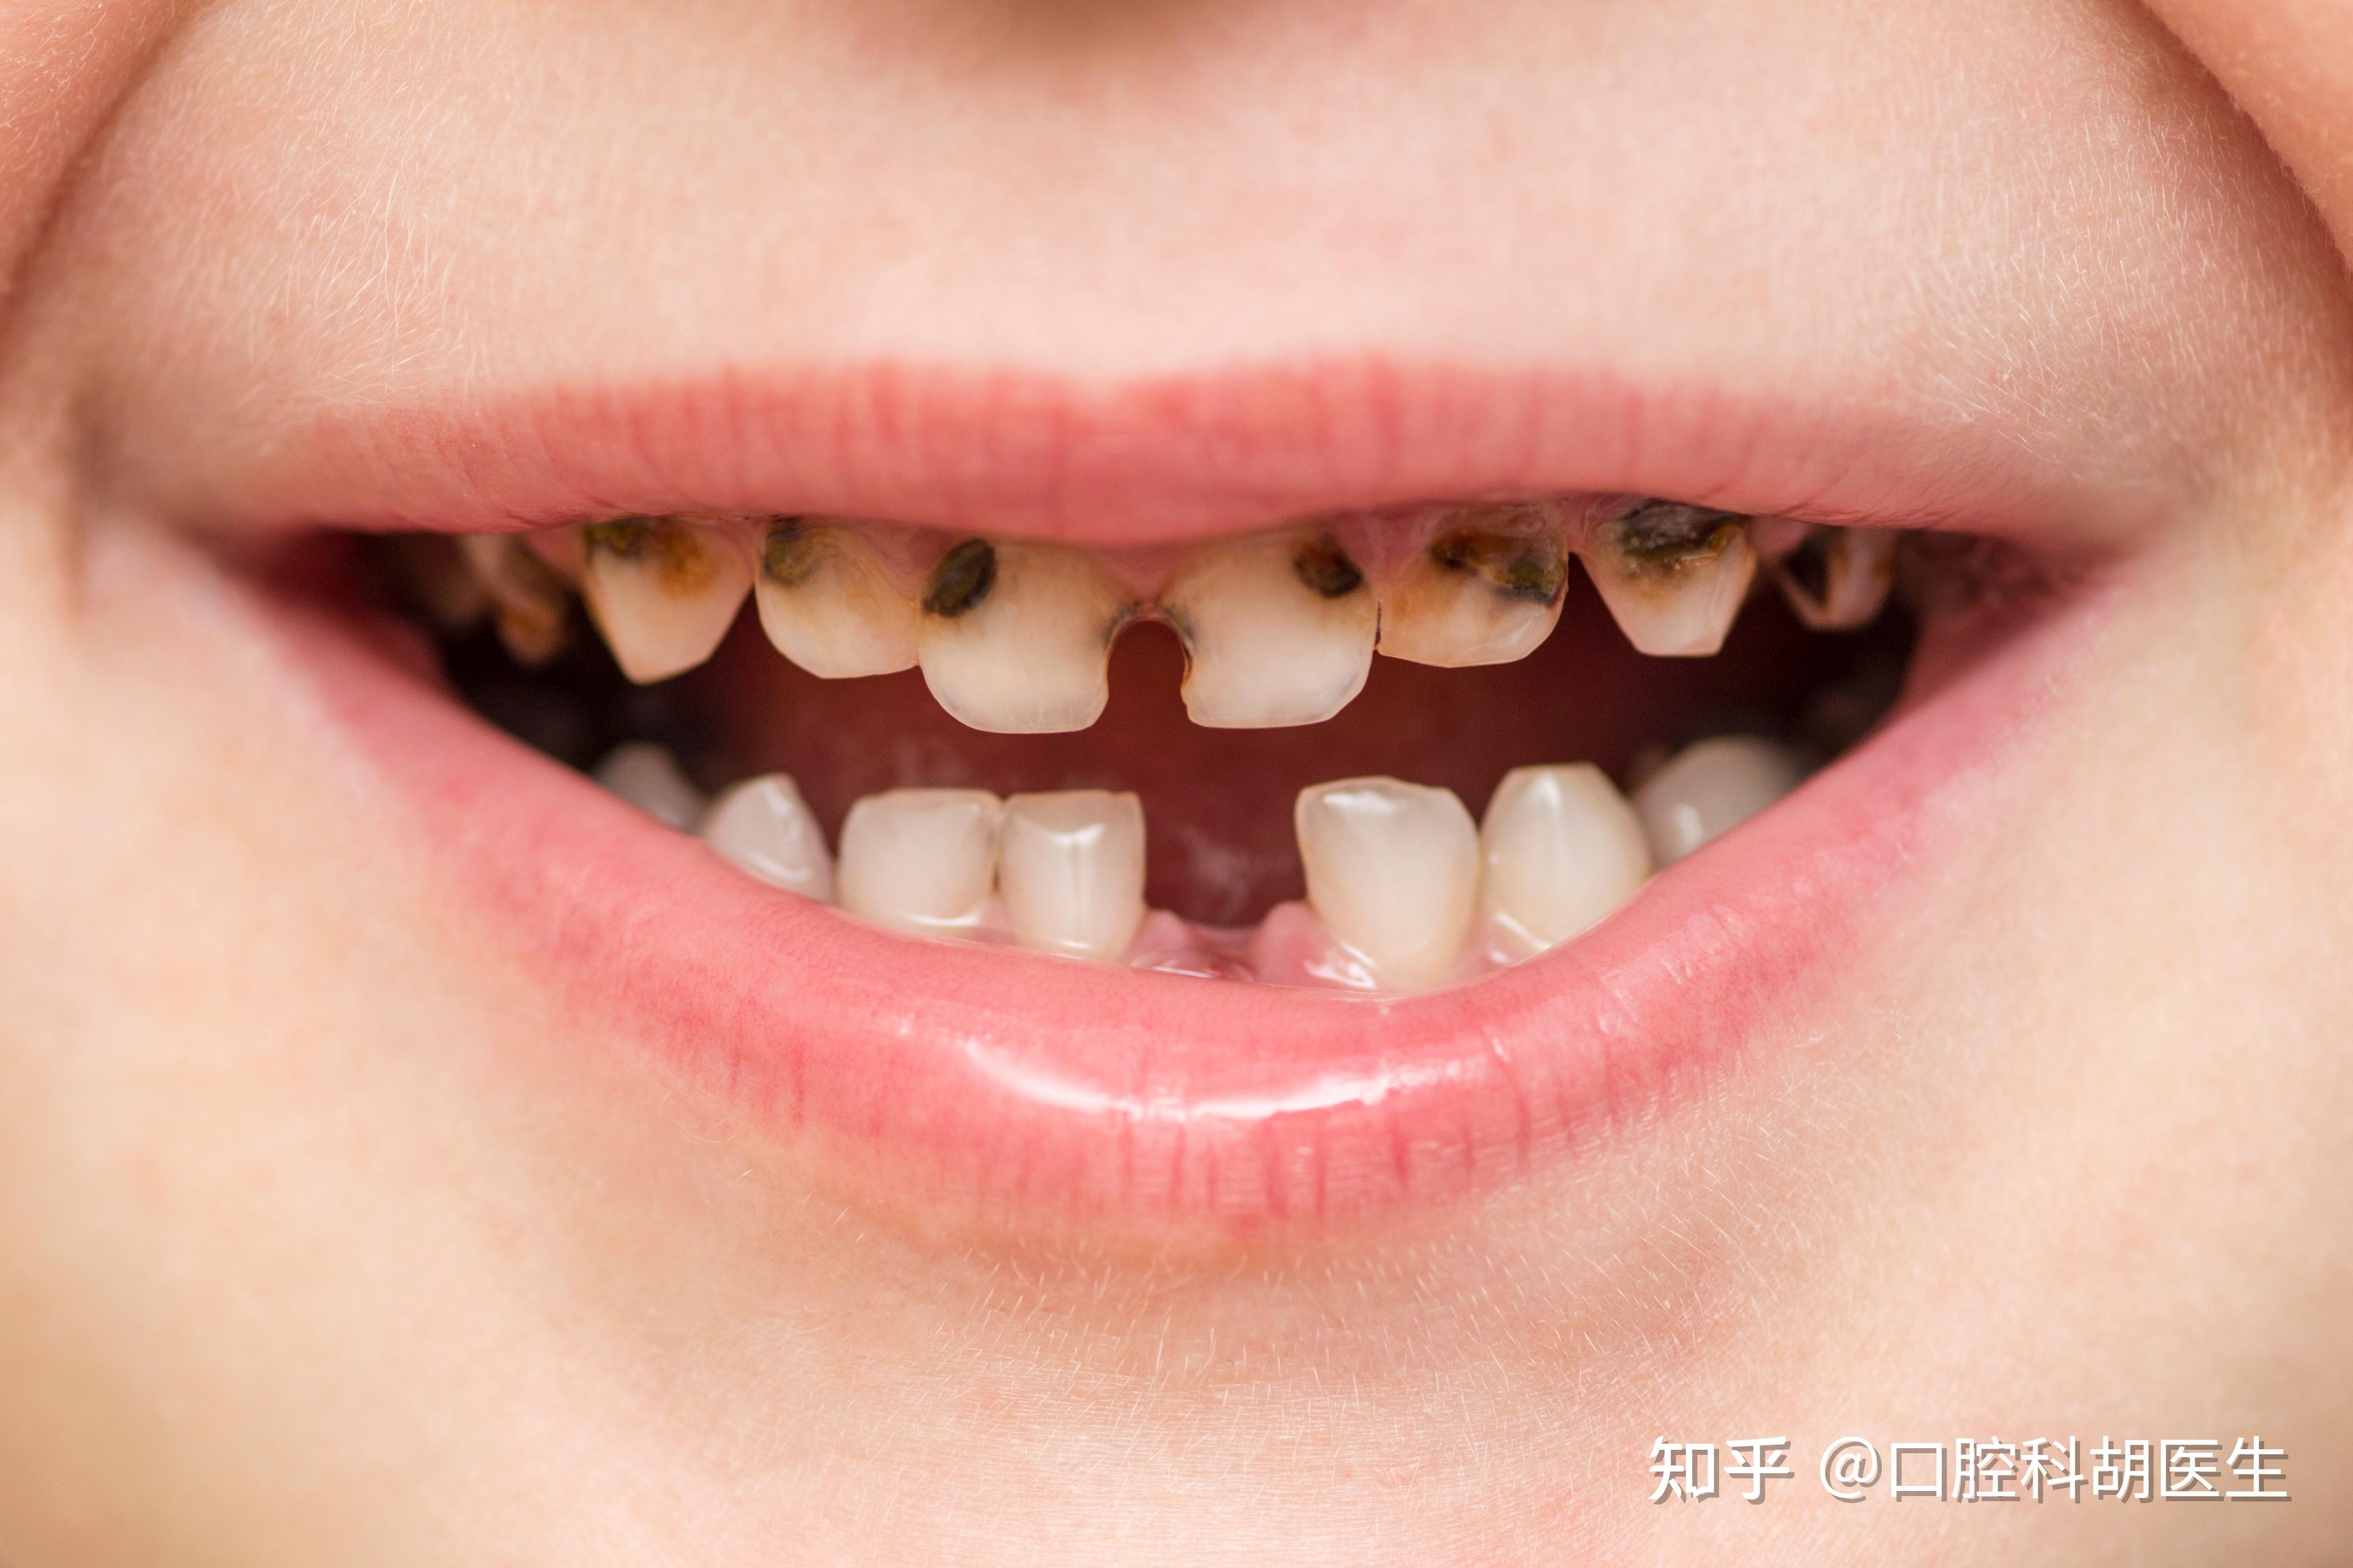 小孩子到了换牙齿的年龄,一天之中哪个时间段去拔牙最佳?